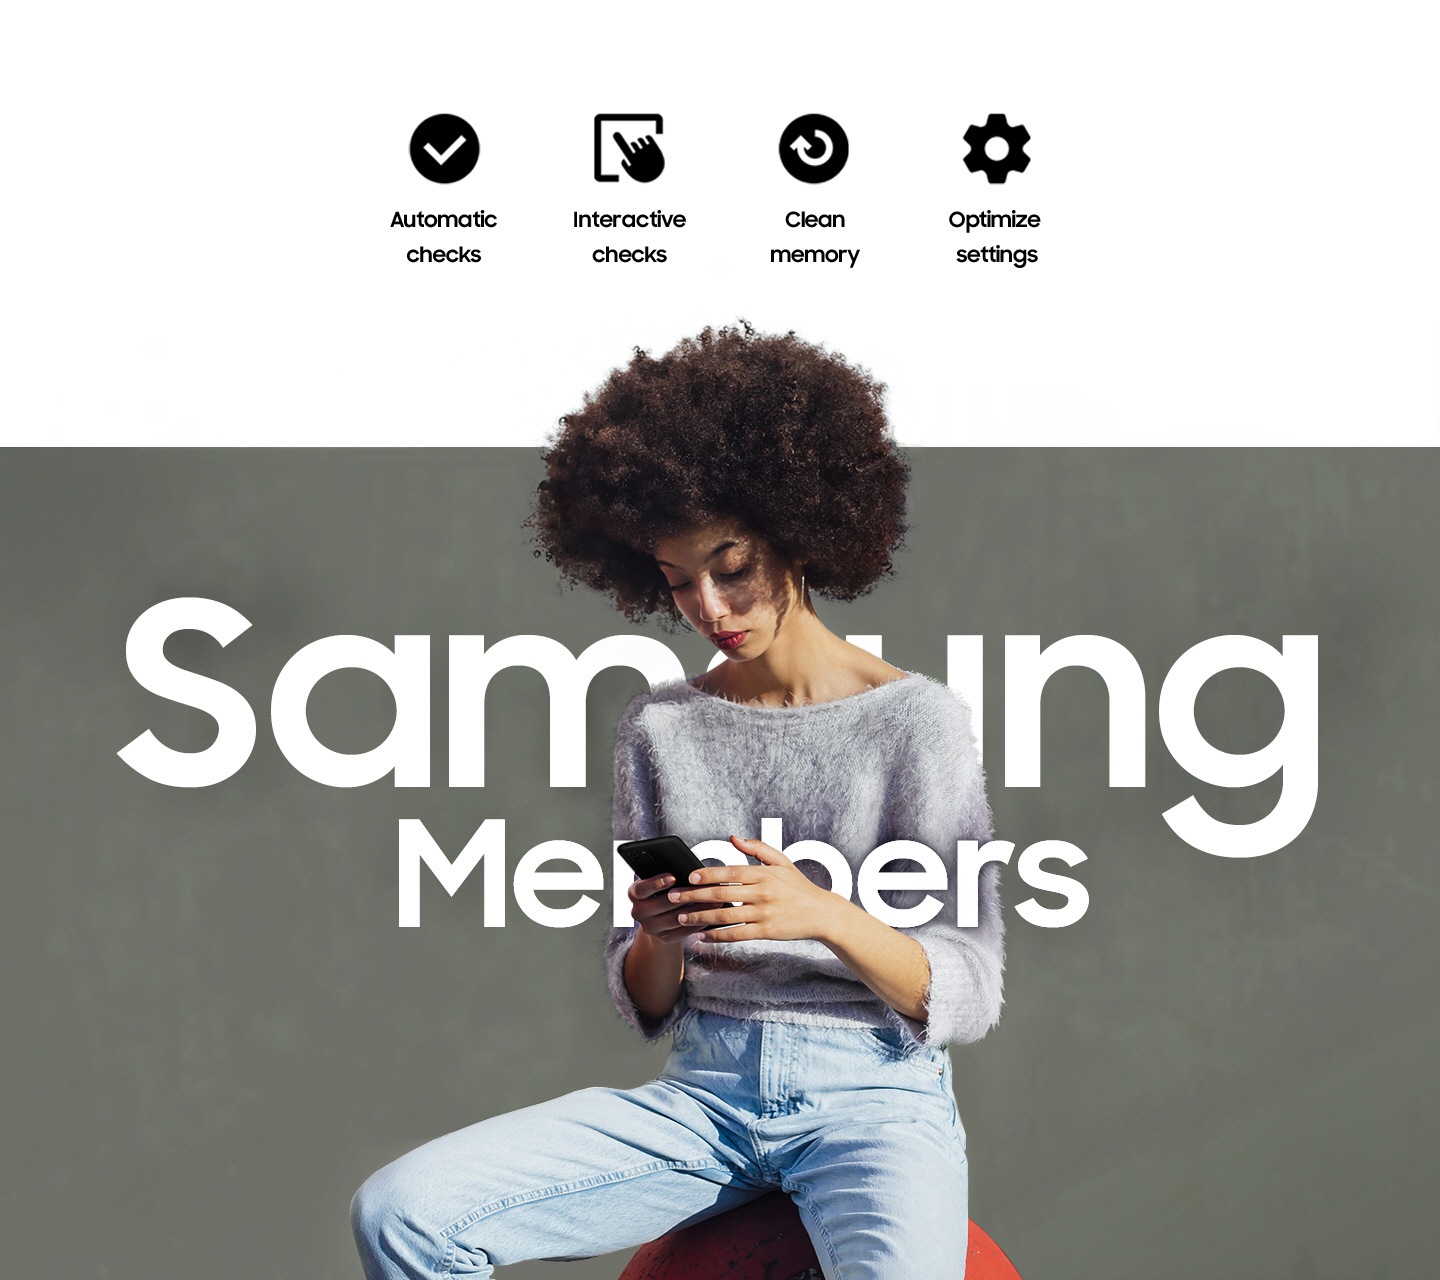 Une femme assise dehors et utilisant son smartphone. Un texte indiquant Samsung Members est écrit sur elle. Vérifications automatiques, Vérifications interactives, Nettoyer la mémoire et Optimiser les paramètres.